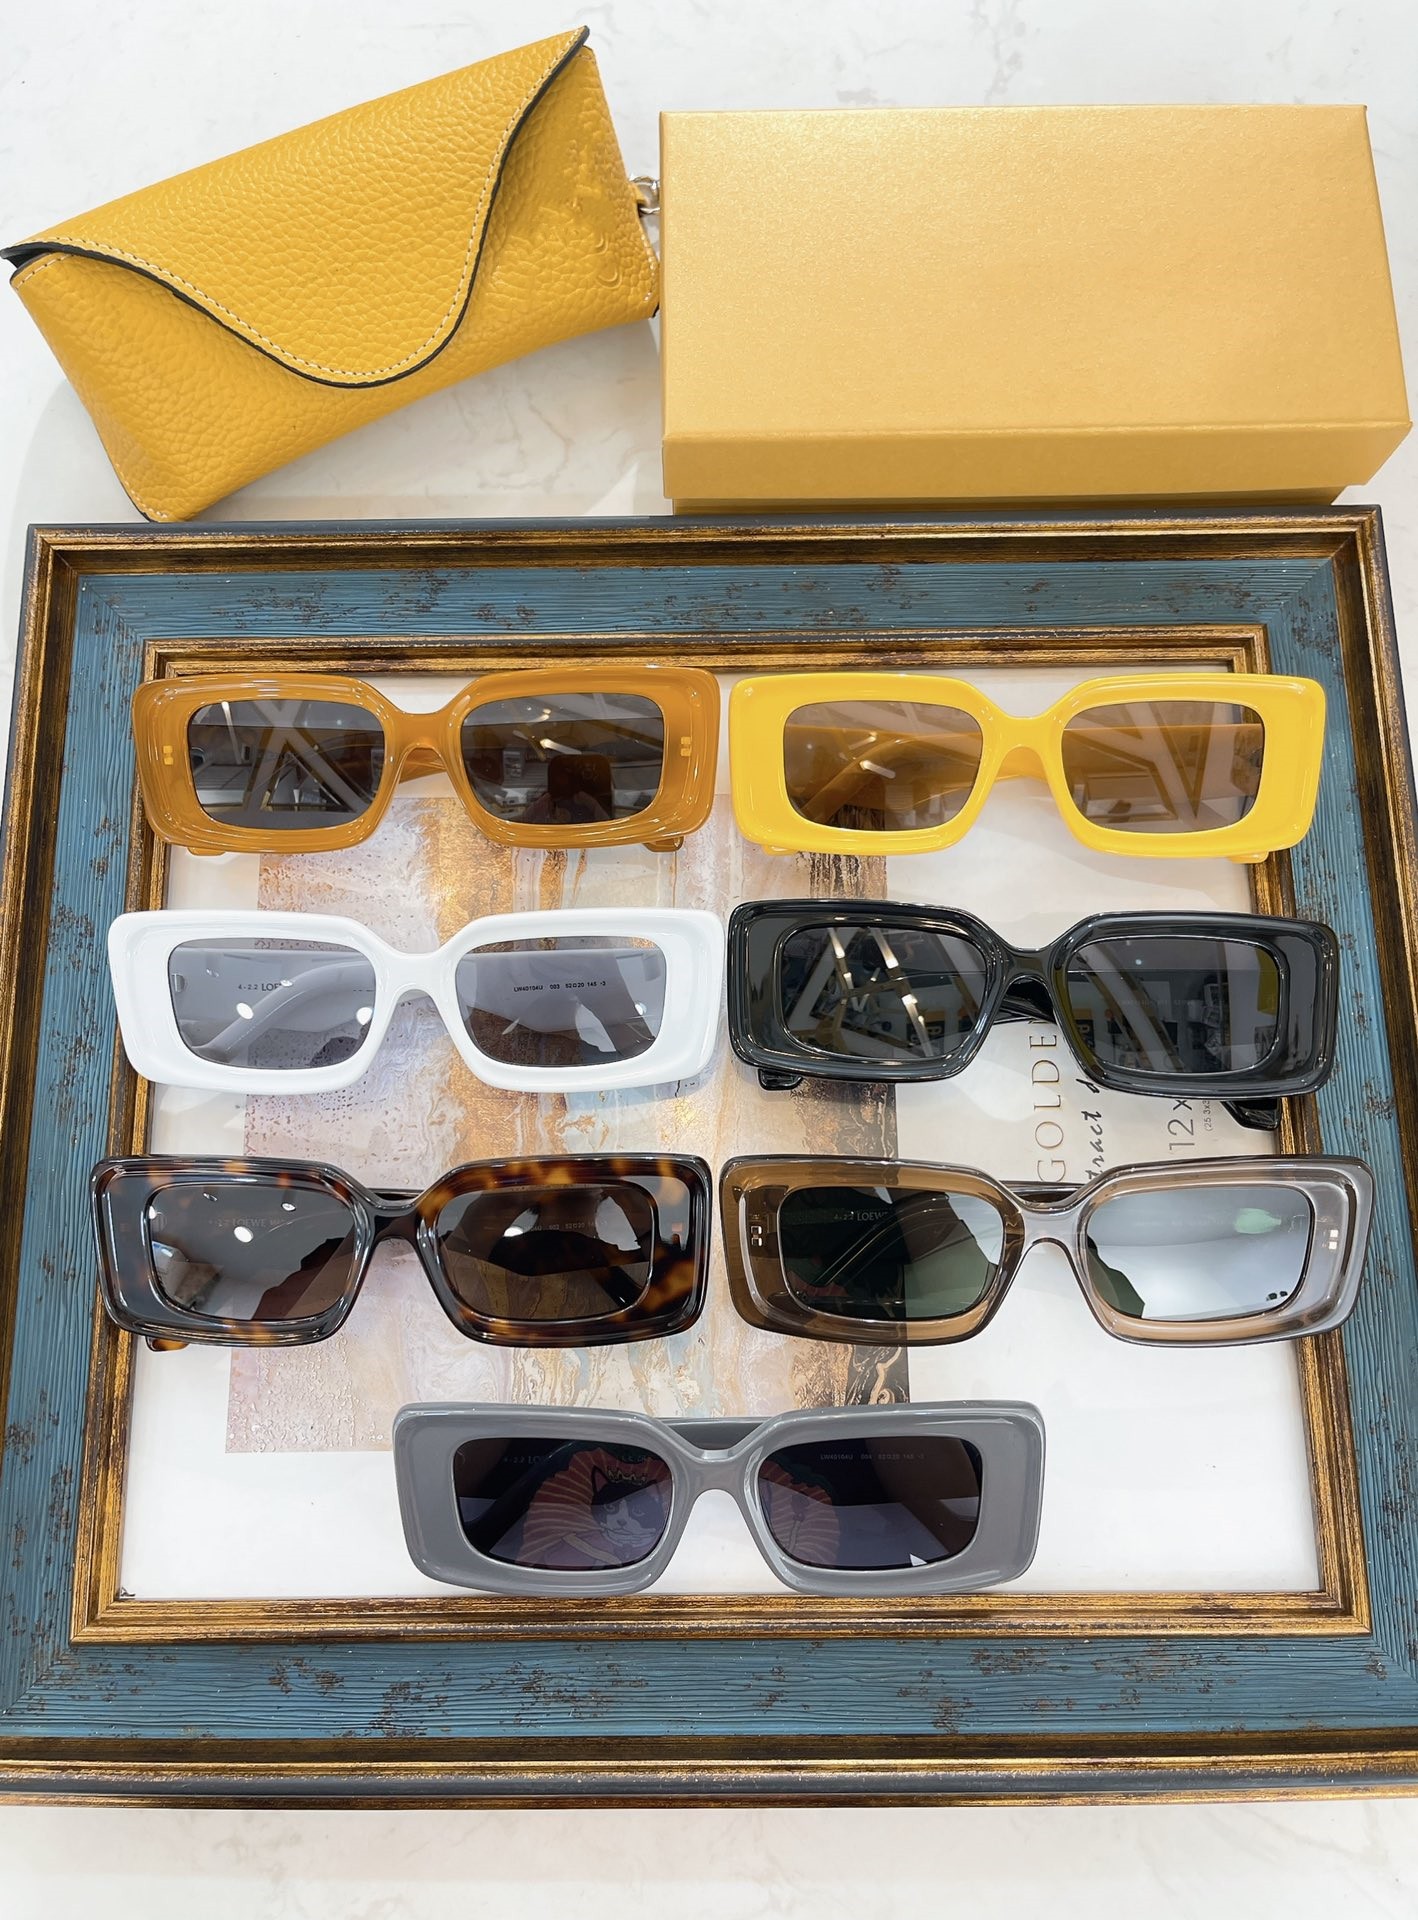 Alta calidad Lw 40104U Gafas de sol rectangulares para mujeres Gafas de sol de diseñador hombres famosos de moda Clásico retro marca de lujo gafas de sol con estuche